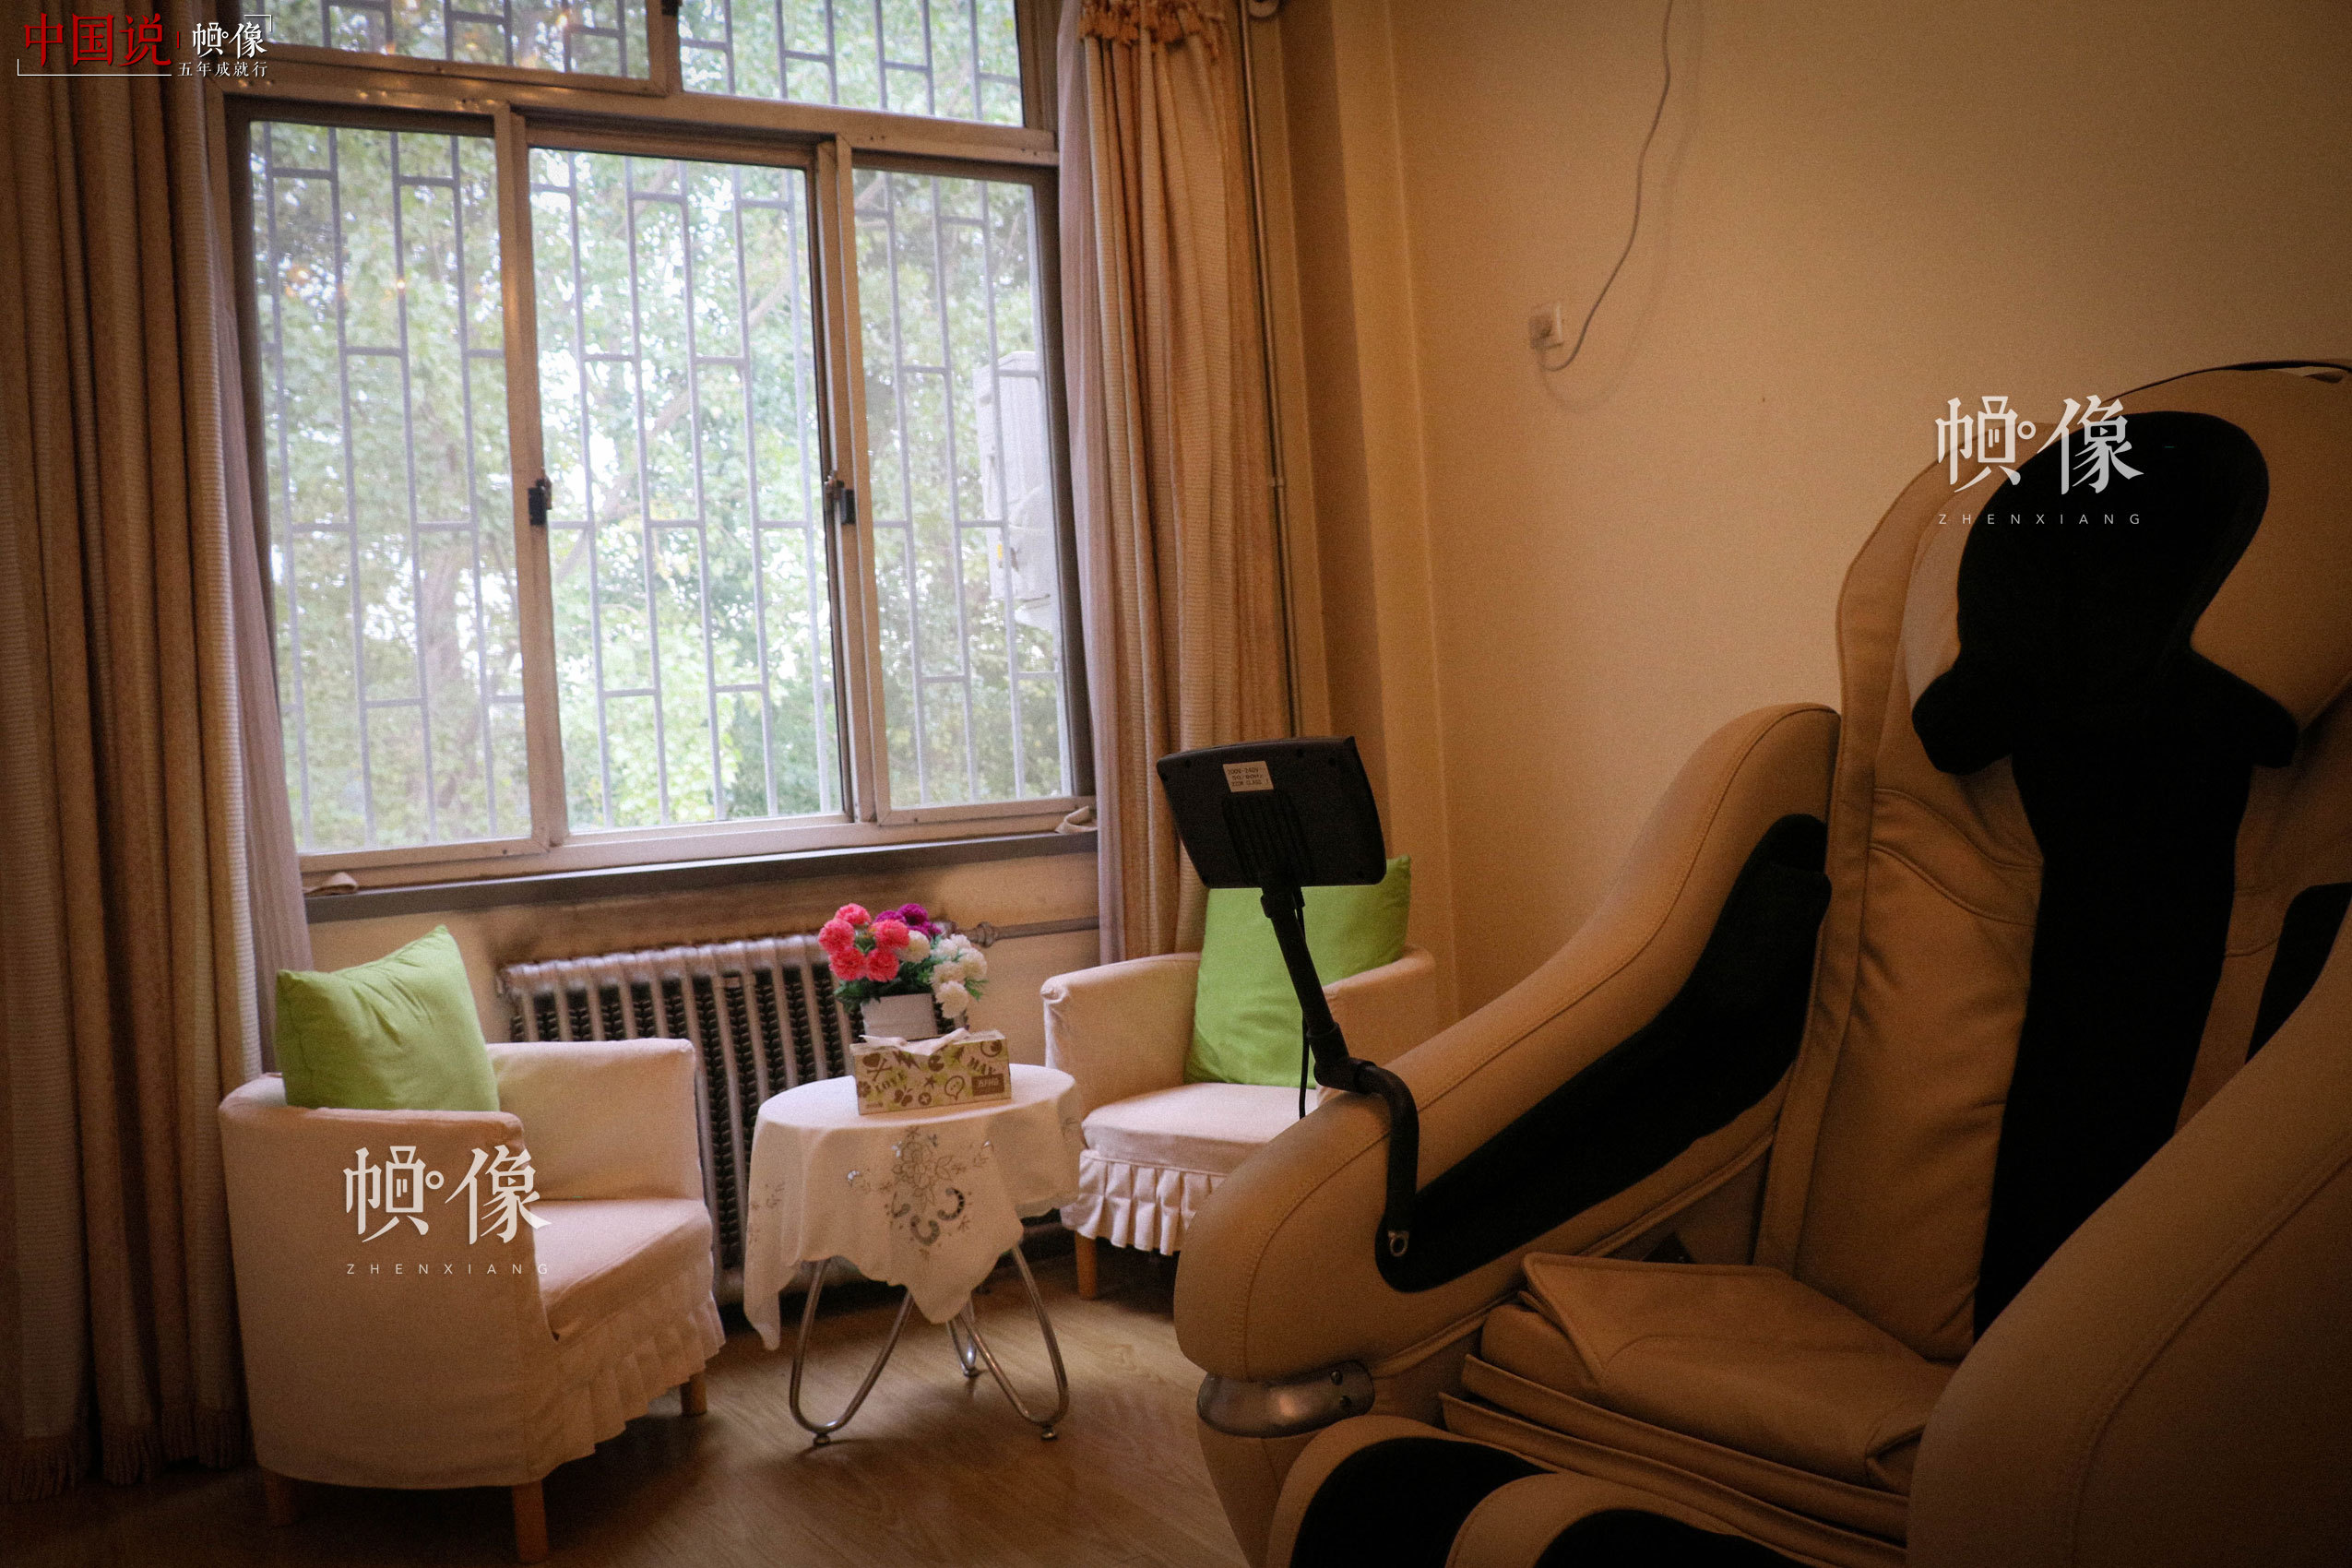 北京市天堂河女子教育矯治所心理治療室。中國網記者 趙超 攝